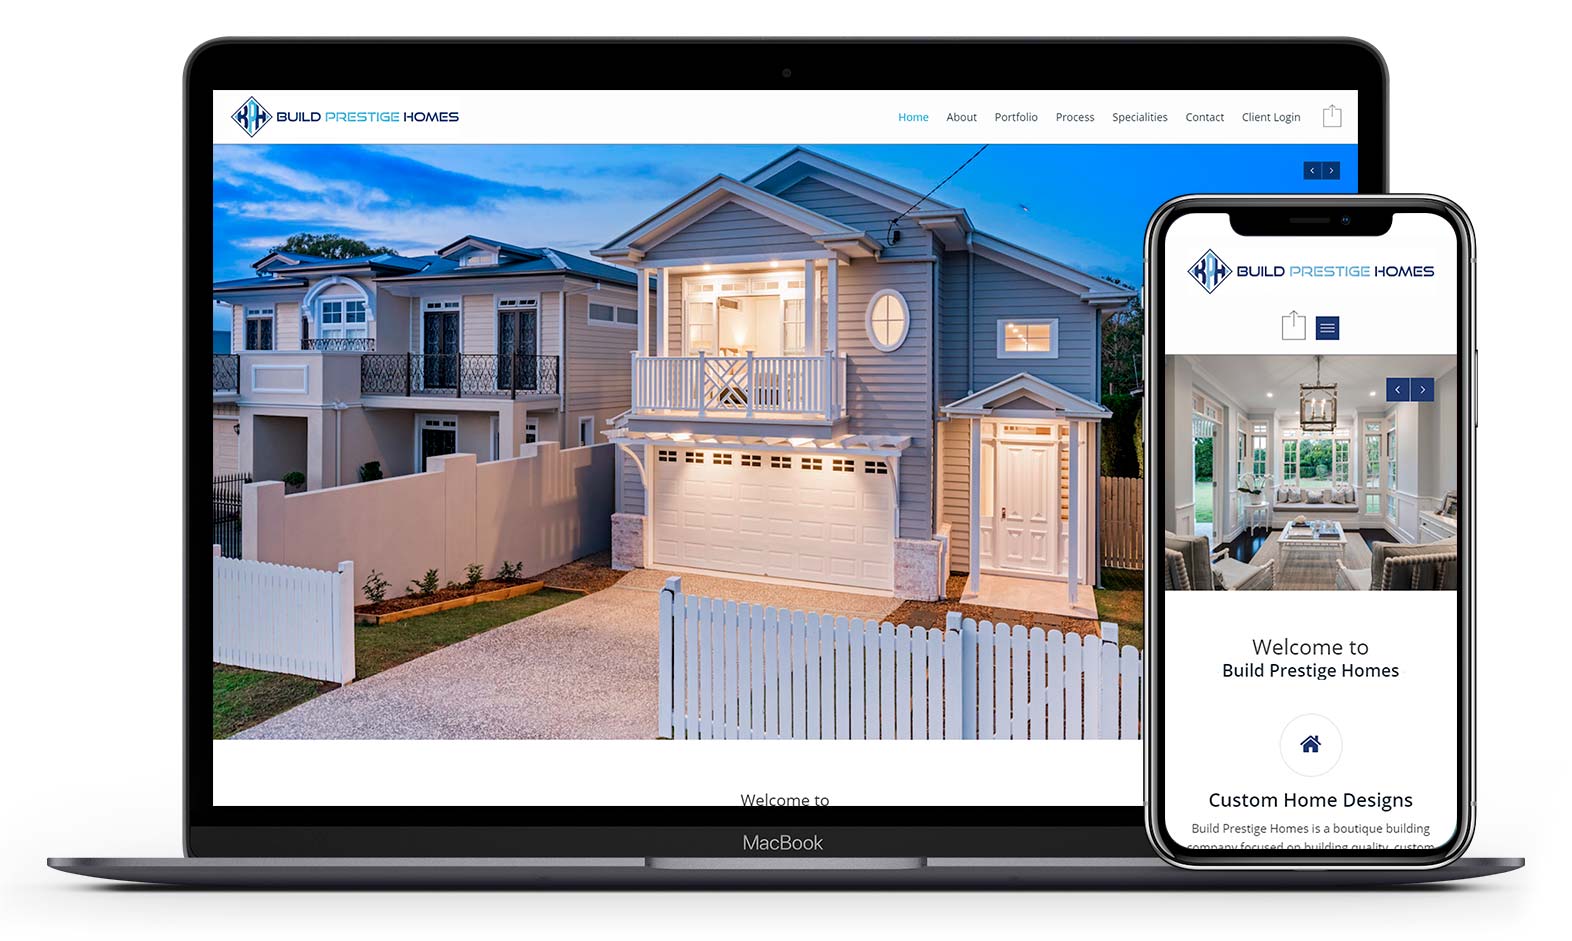 Build prestige homes' website design displayed responsive devices